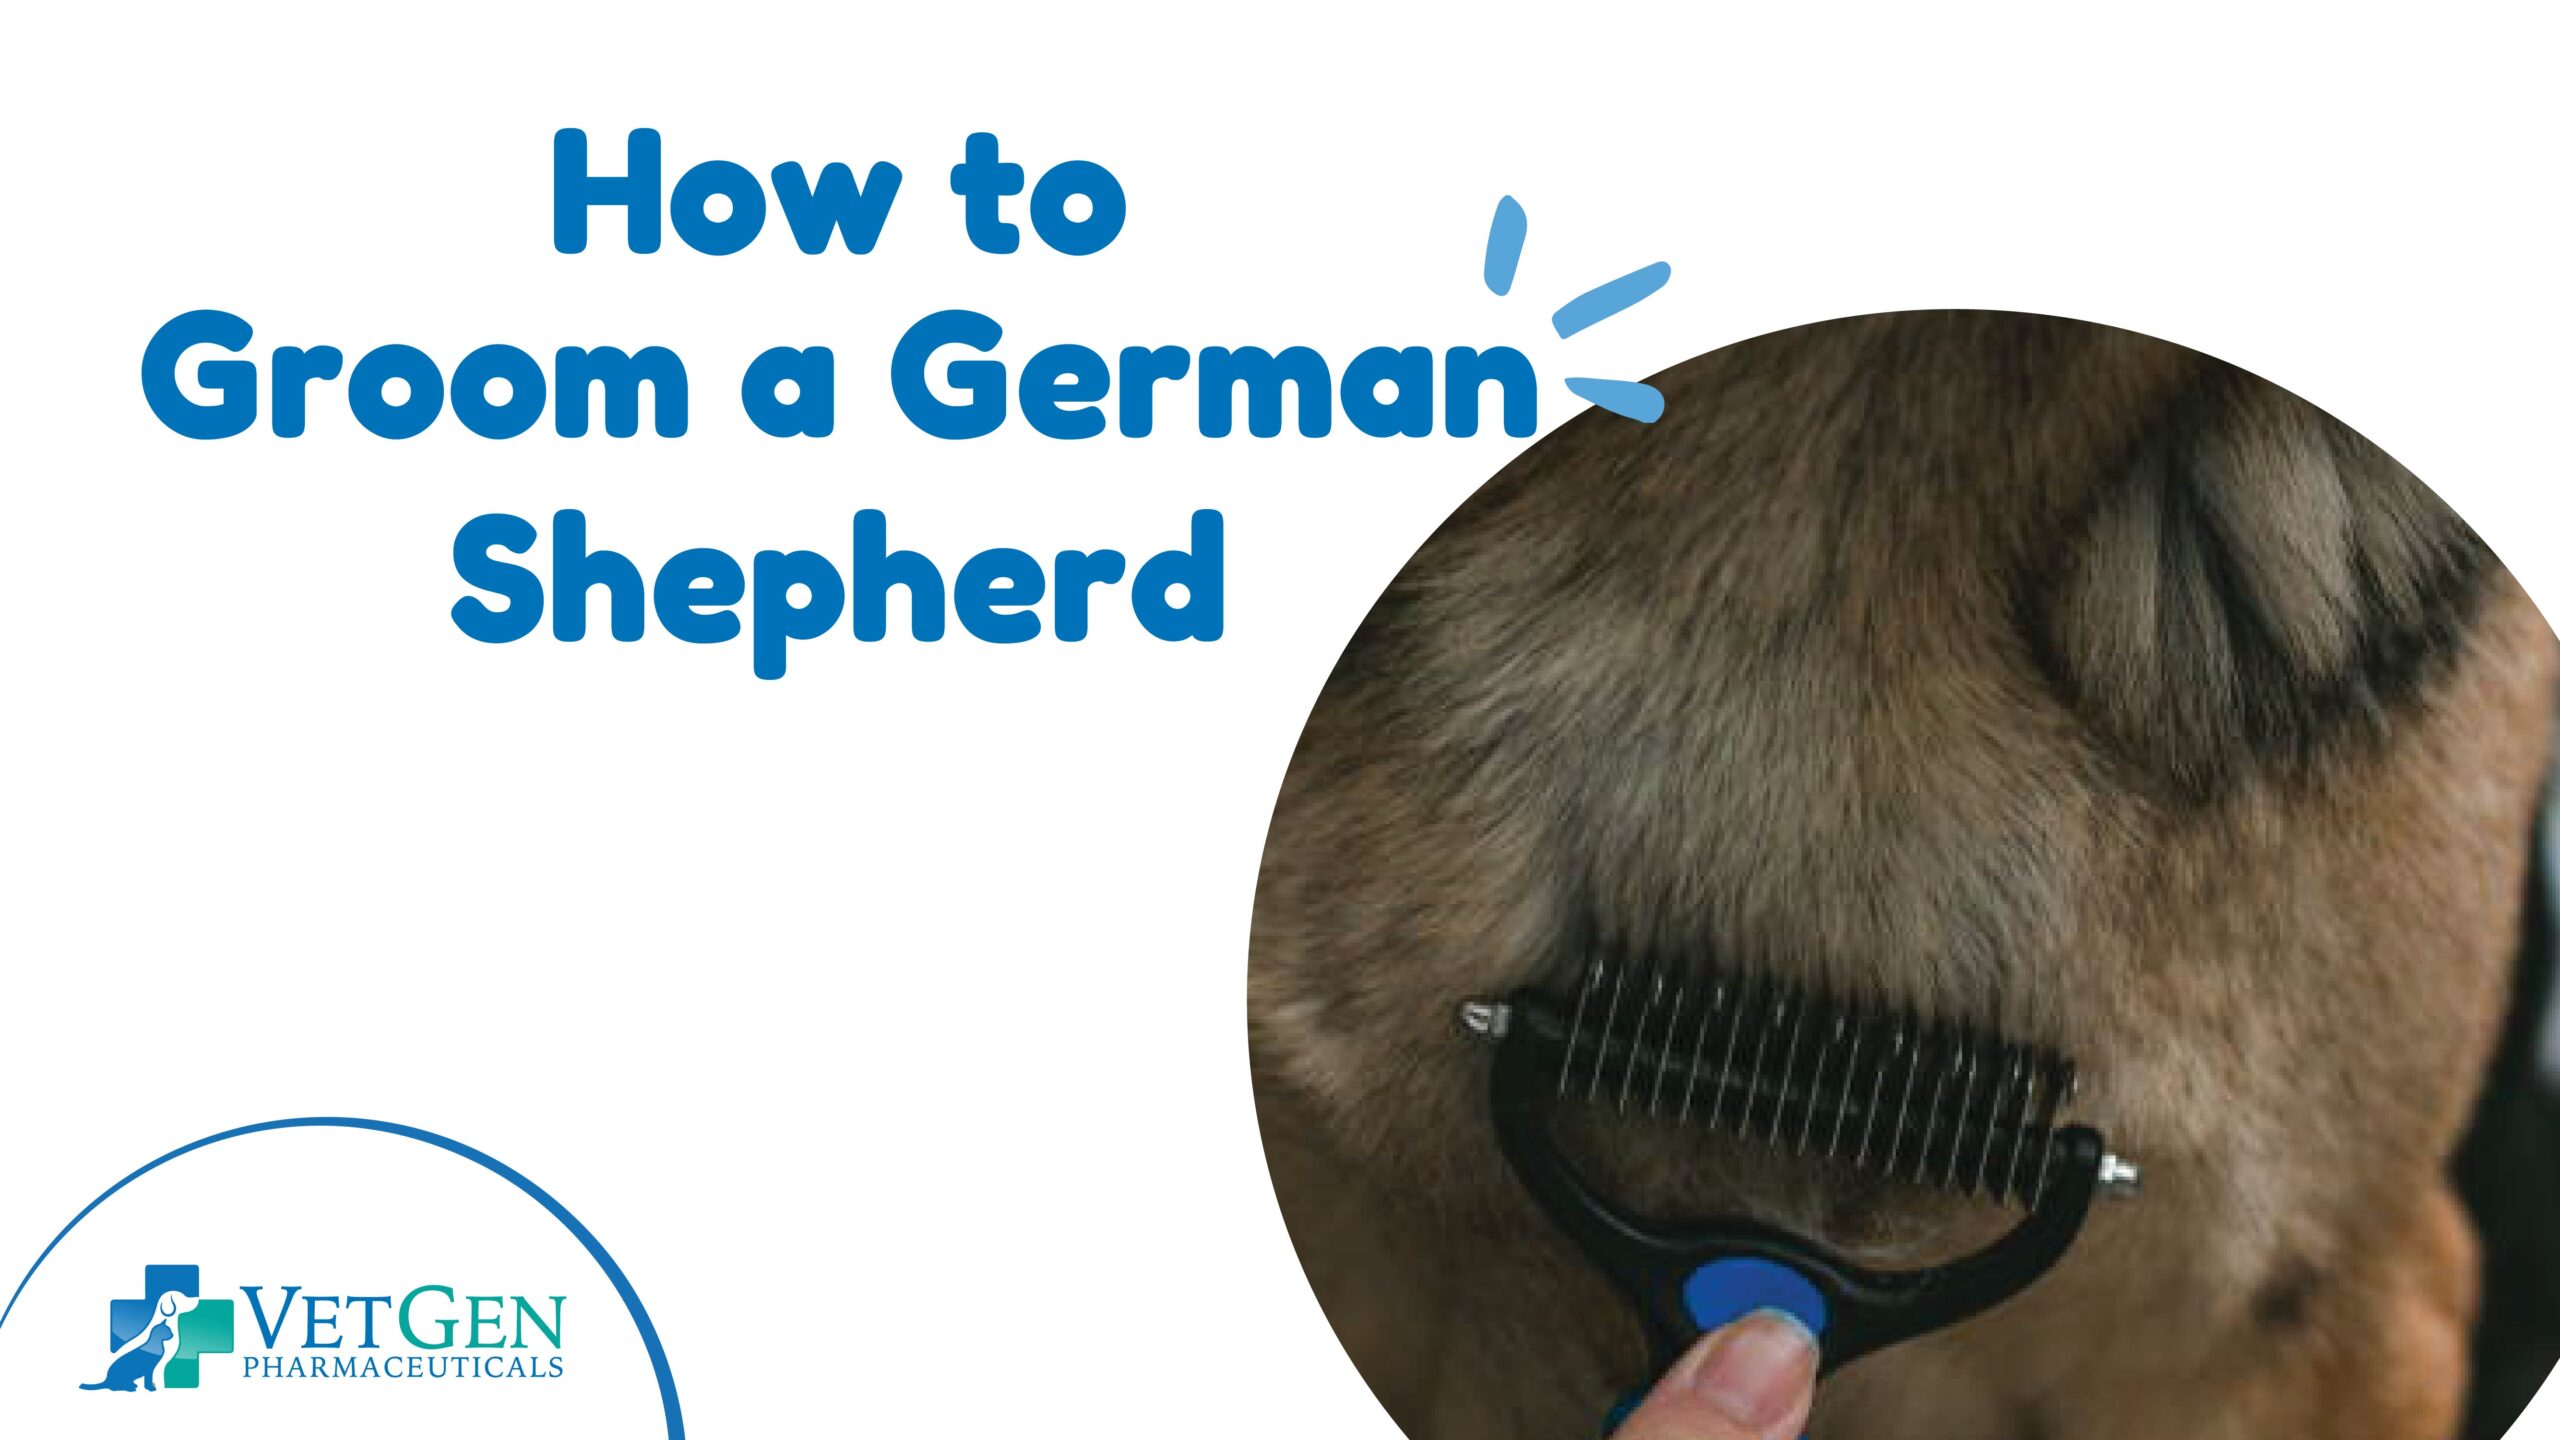 How to Groom a German Shepherd